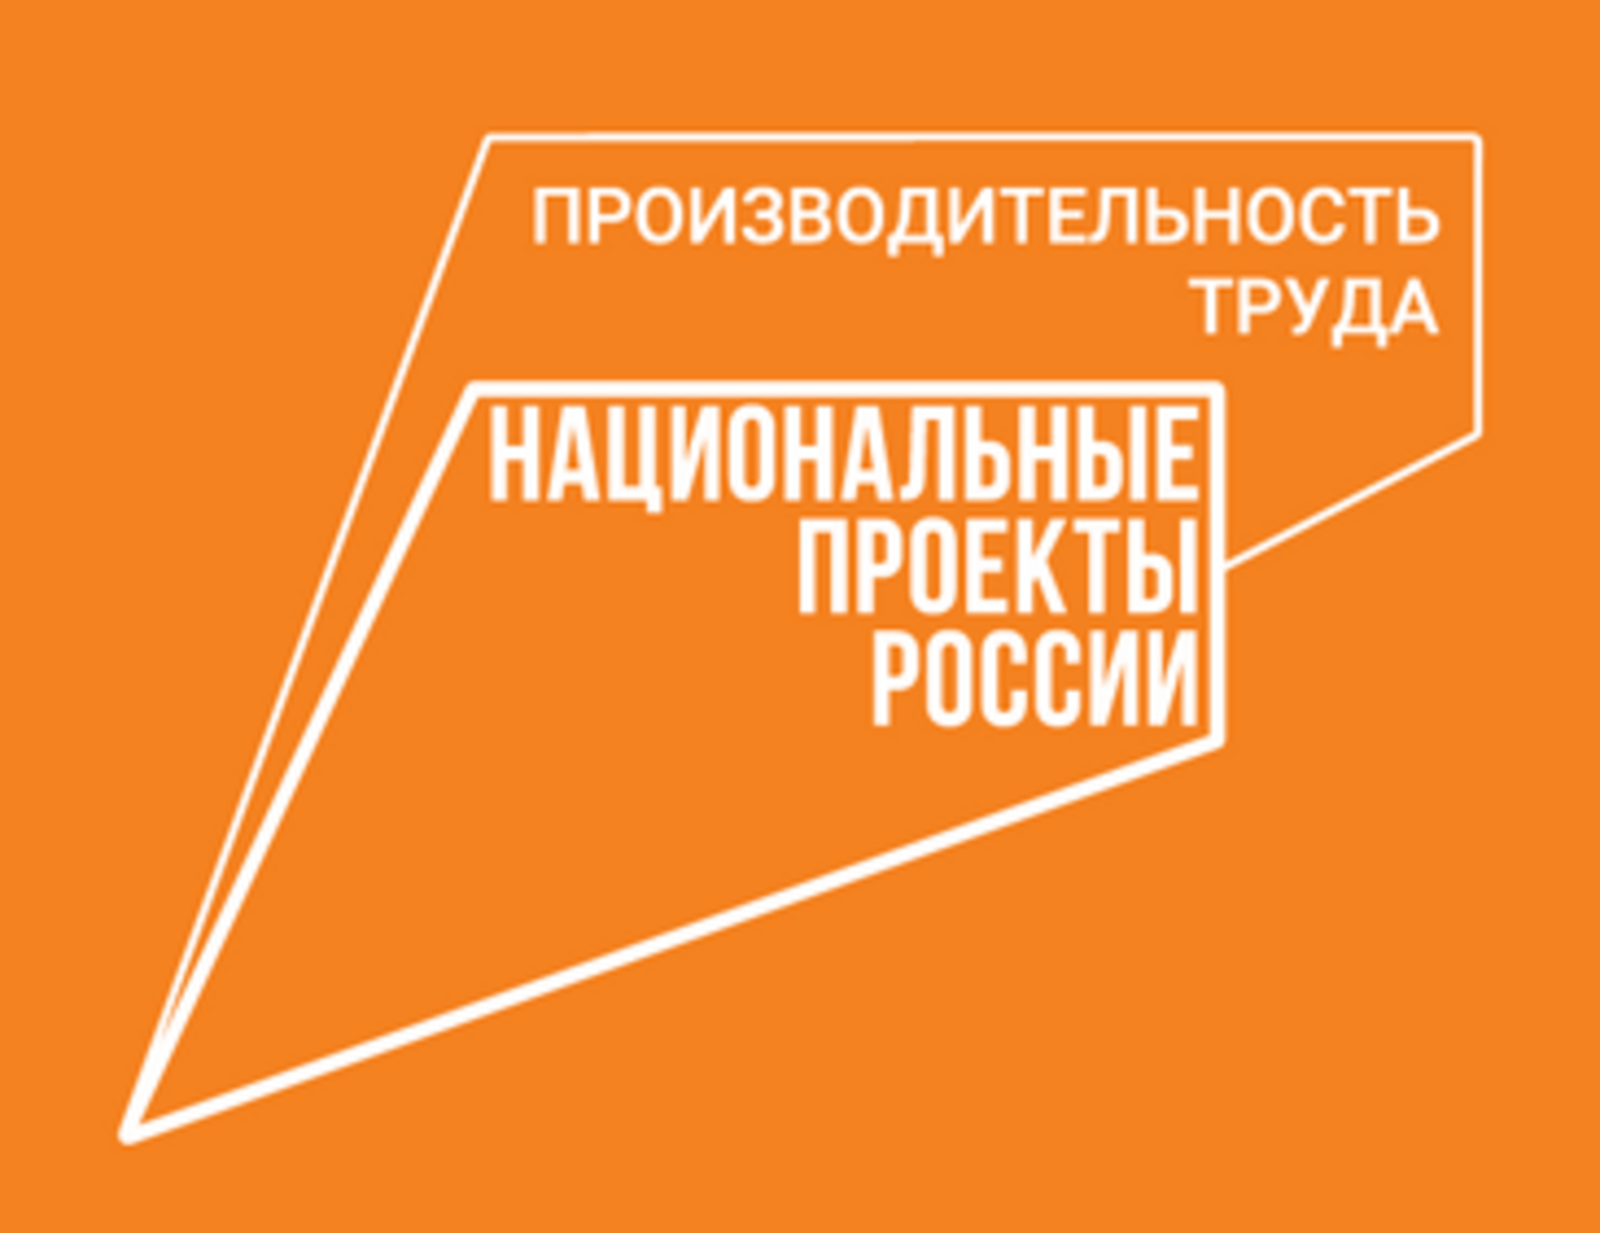 По нацпроекту «Производительность труда» Башкортостан достиг целевых показателей